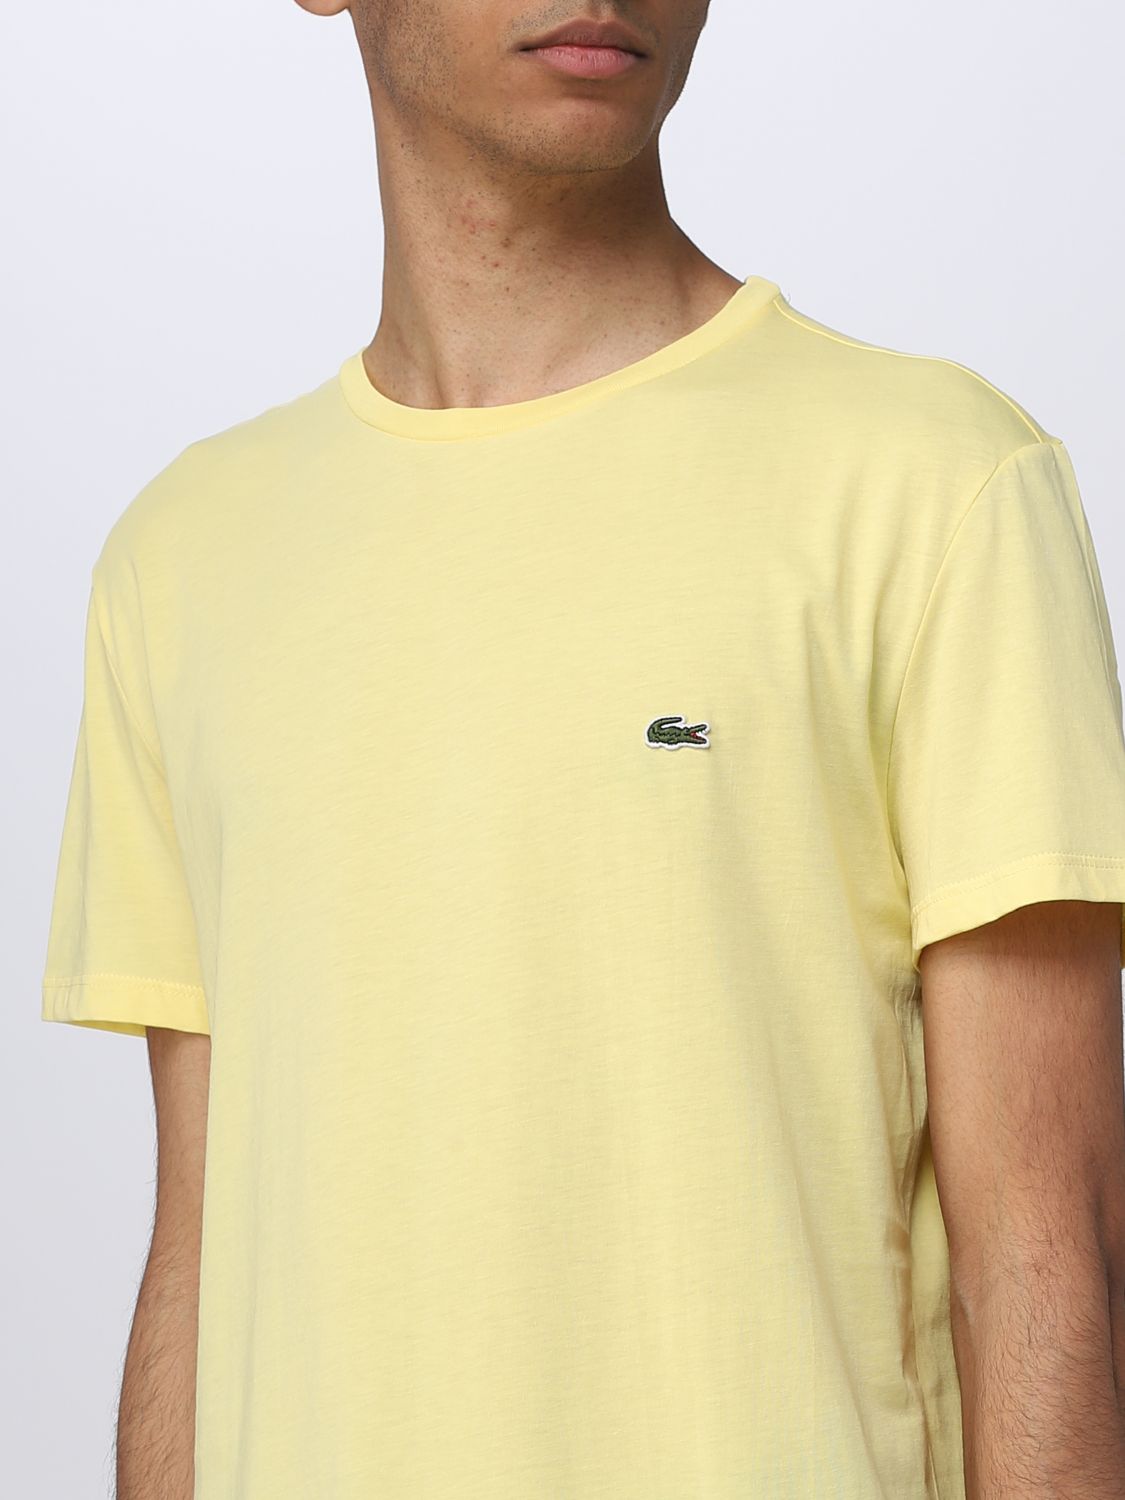 puenting Implacable Vacante LACOSTE: Camiseta para hombre, Amarillo | Camiseta Lacoste TH6709 en línea  en GIGLIO.COM